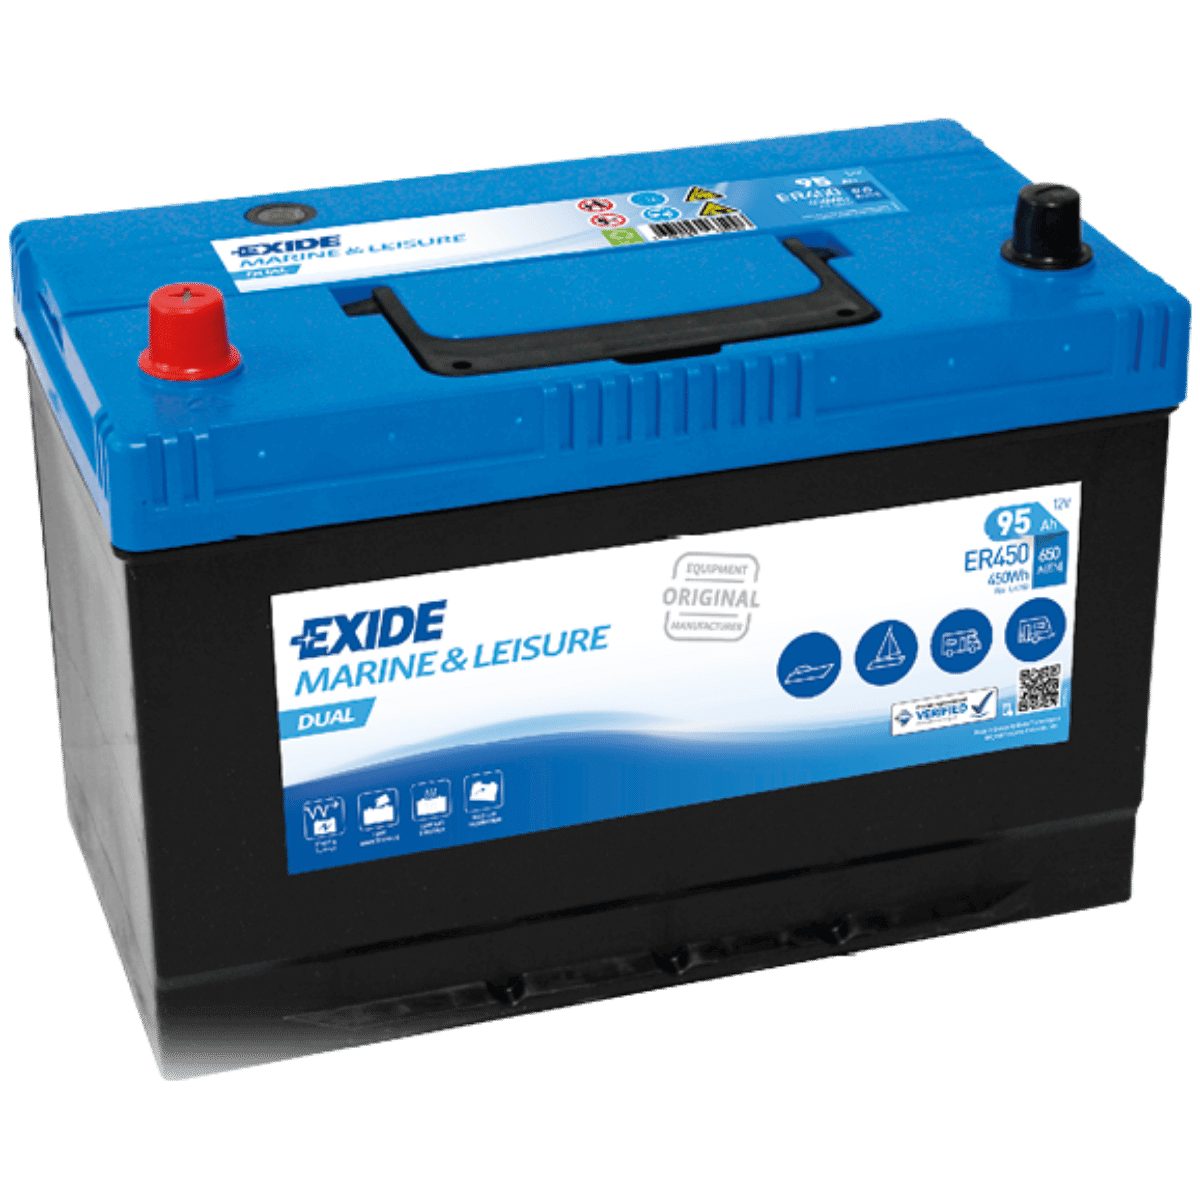 Exide Exide ER450 DUAL 12V 95Ah Versorgungsbatterie für Wohnmobil und Boot Batterie, (12 V)